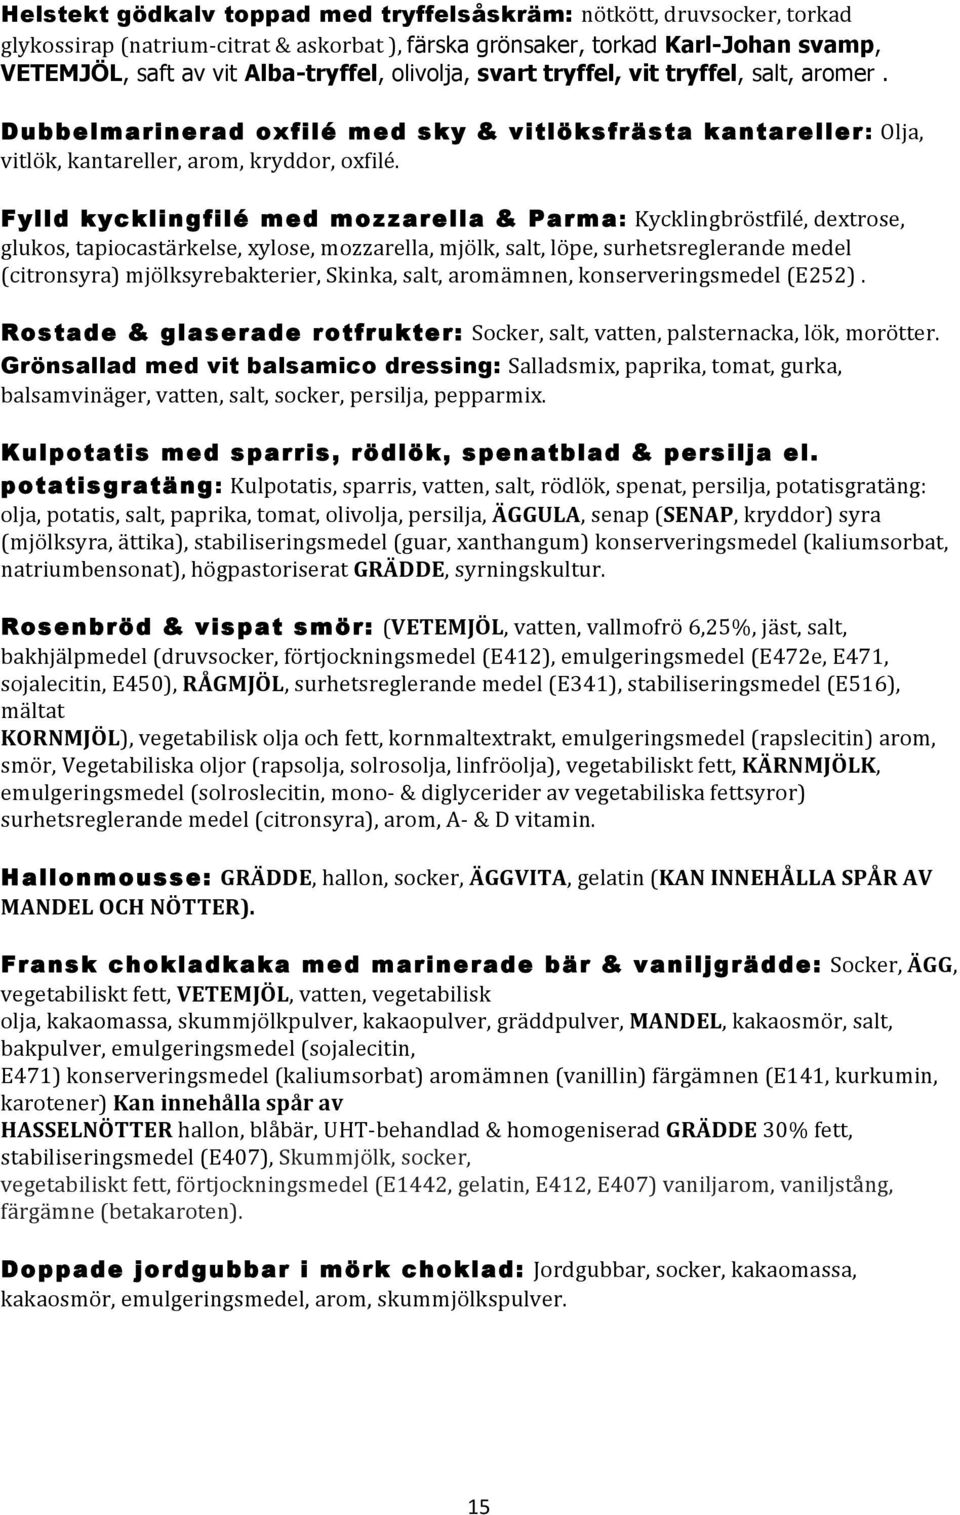 Fylld kycklingfilé med mozzarella & Parma: Kycklingbröstfilé, dextrose, glukos, tapiocastärkelse, xylose, mozzarella, mjölk, salt, löpe, surhetsreglerande medel (citronsyra) mjölksyrebakterier,